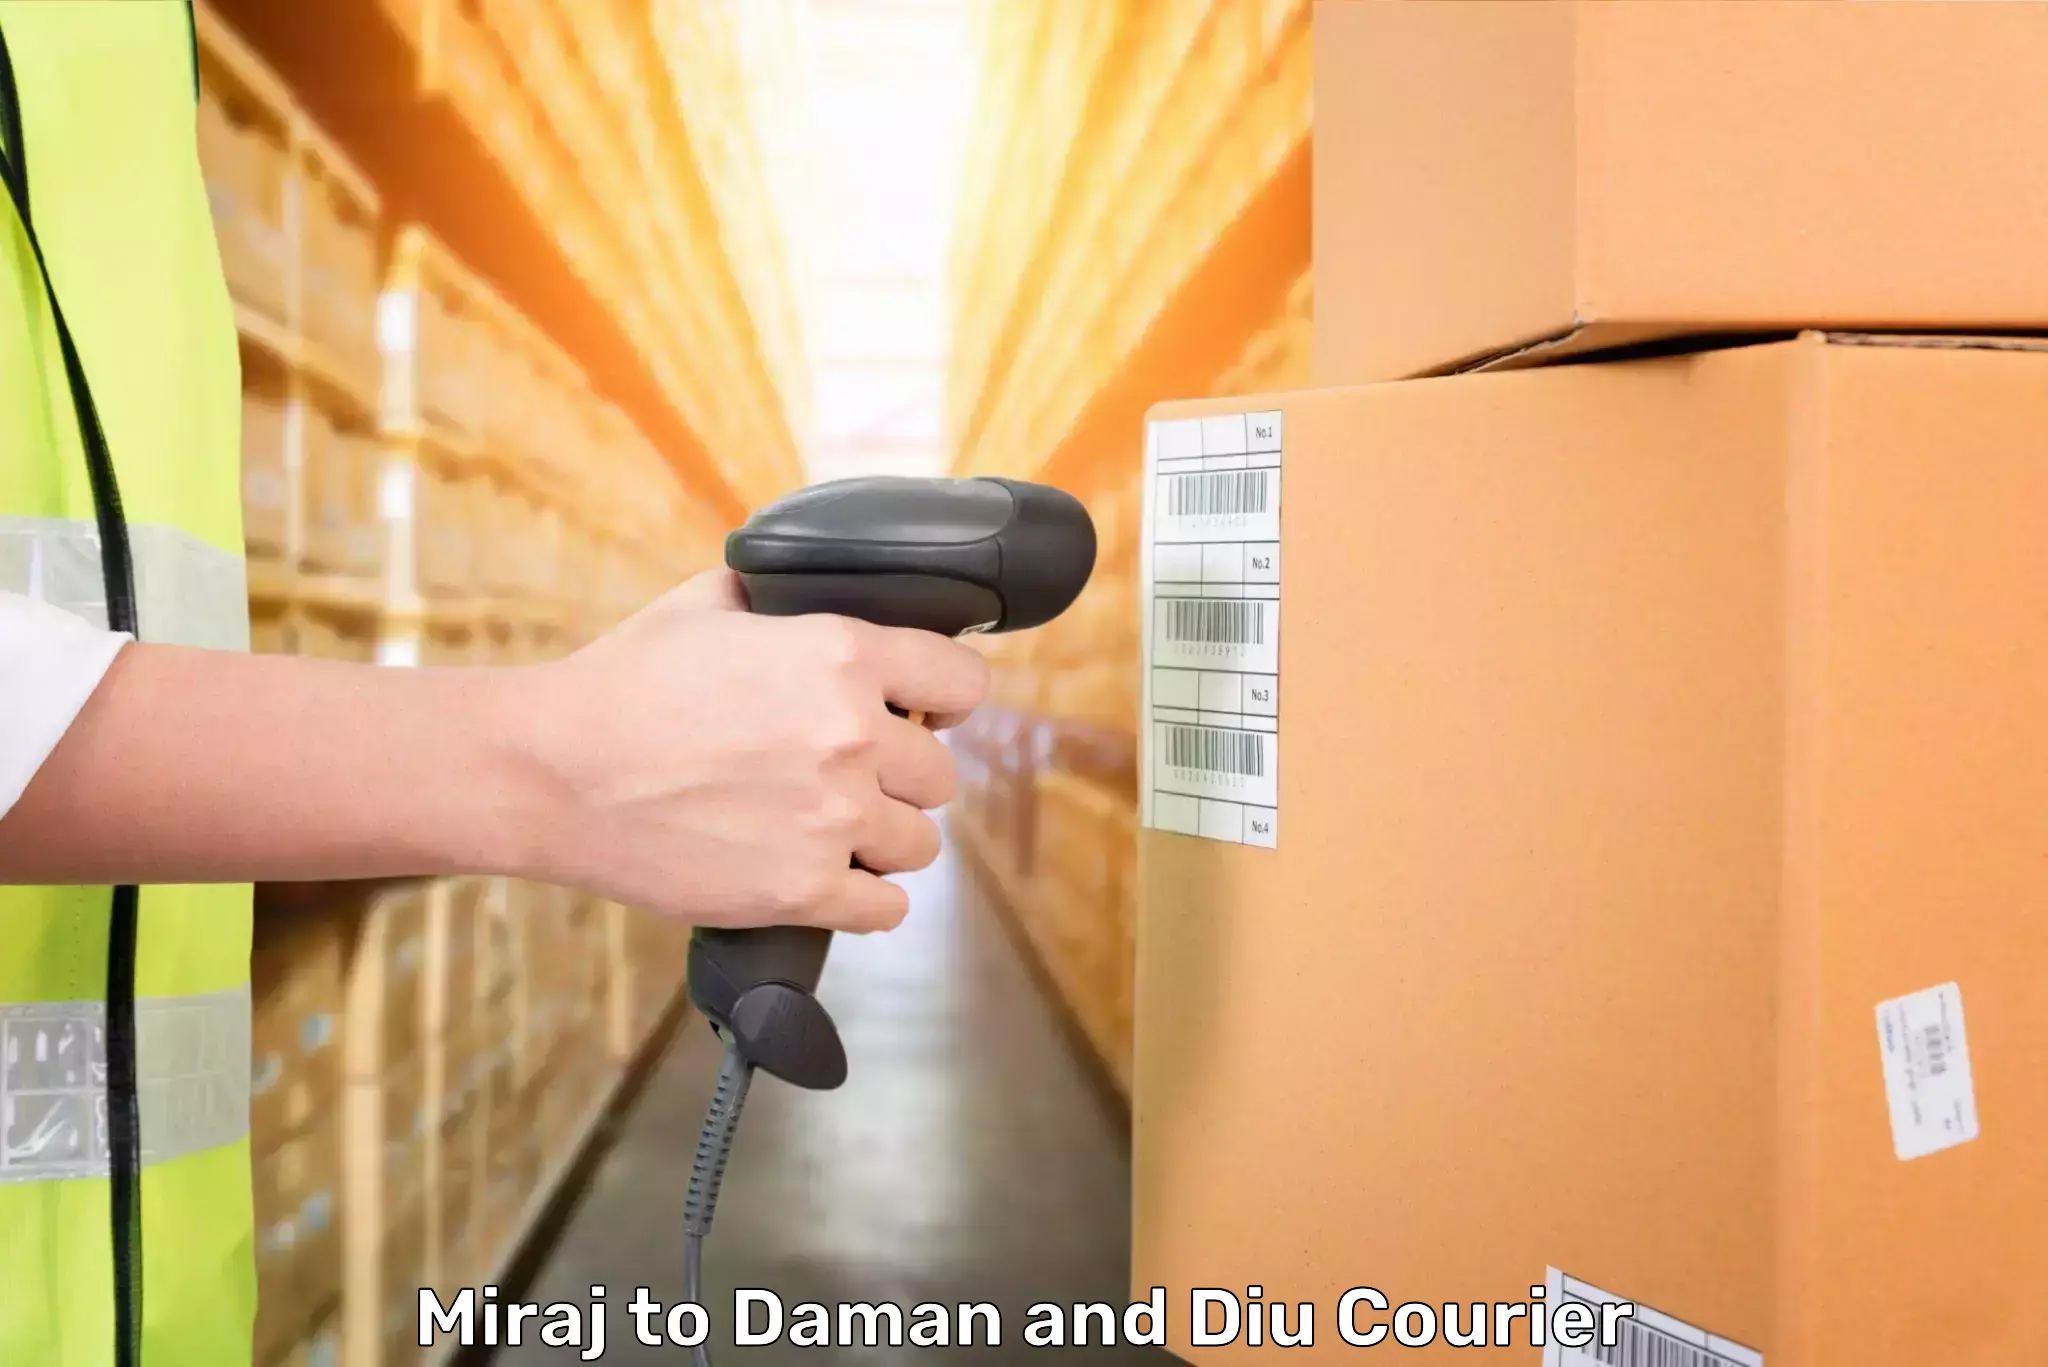 Hassle-free luggage shipping Miraj to Daman and Diu